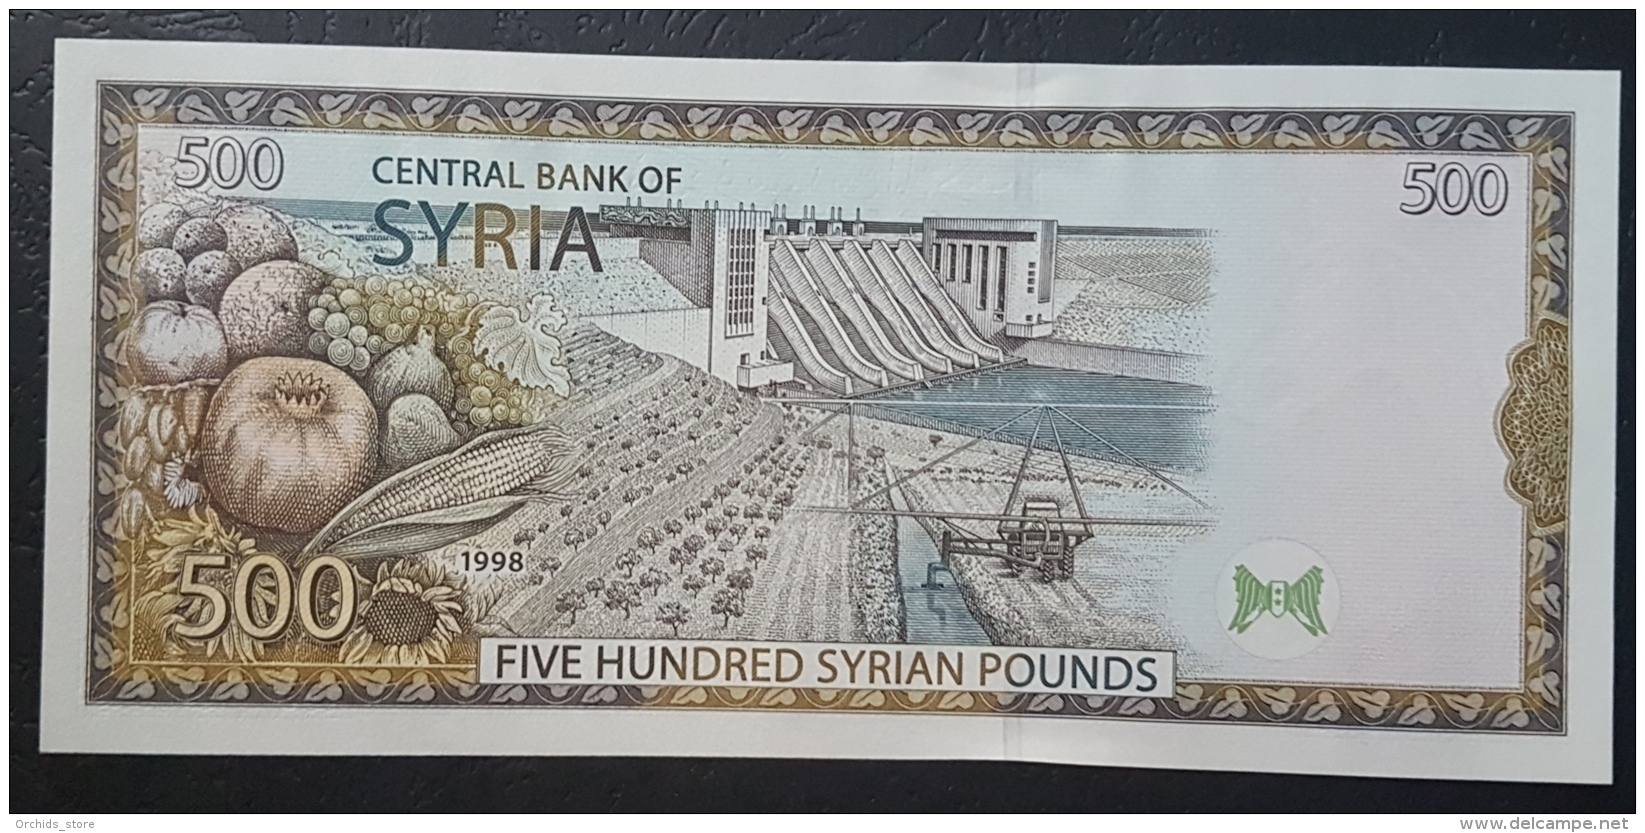 HX - Syria 1998 500 Livres UNC - Syria